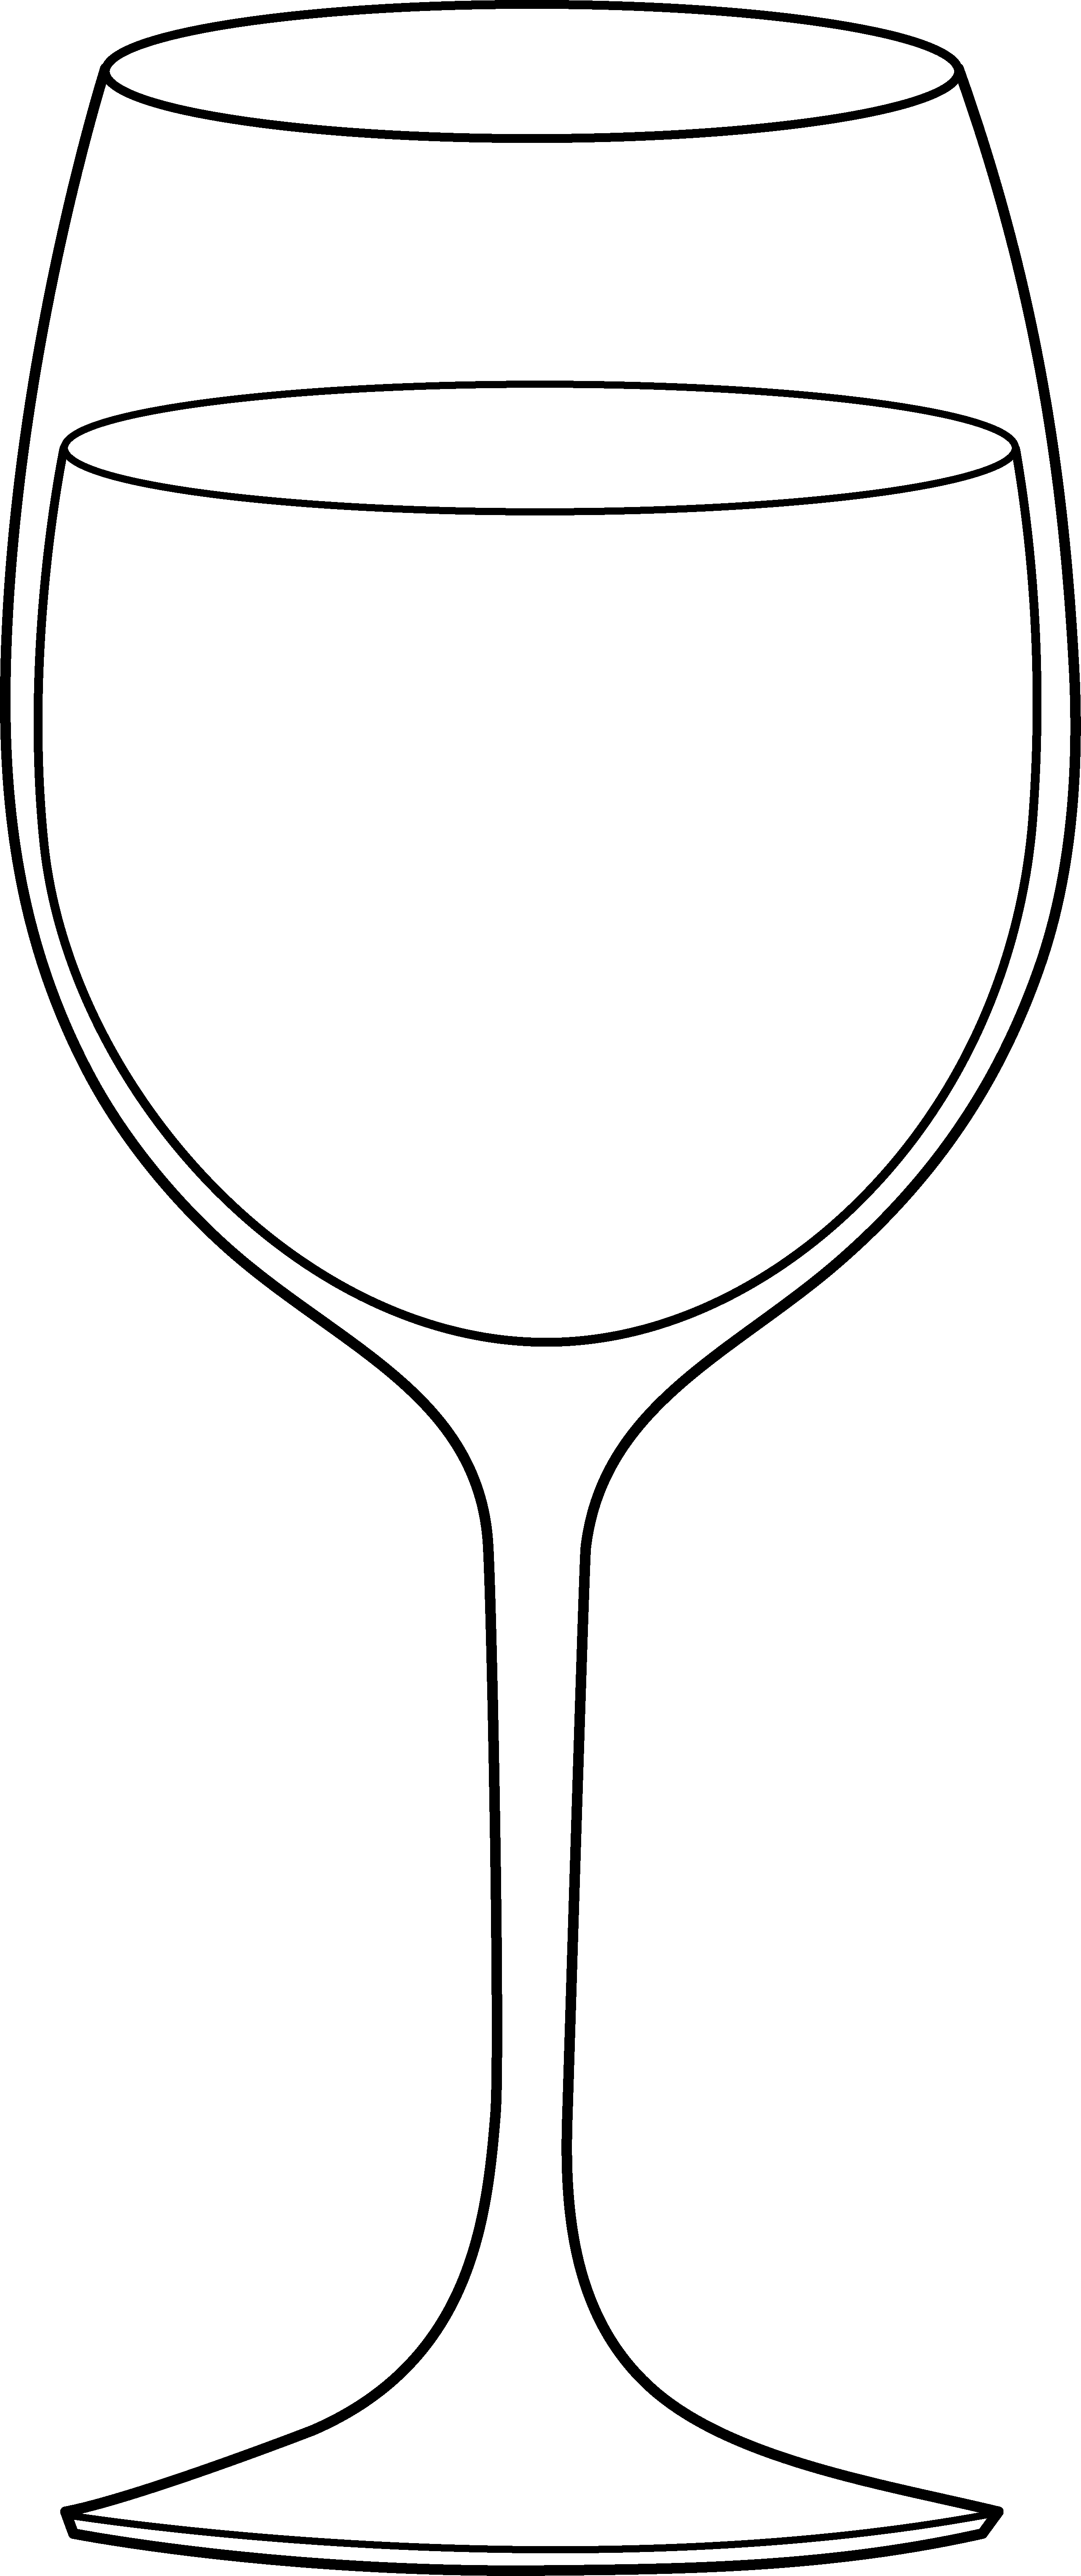 46 Free Wine Glass Clip Art - Cliparting.com